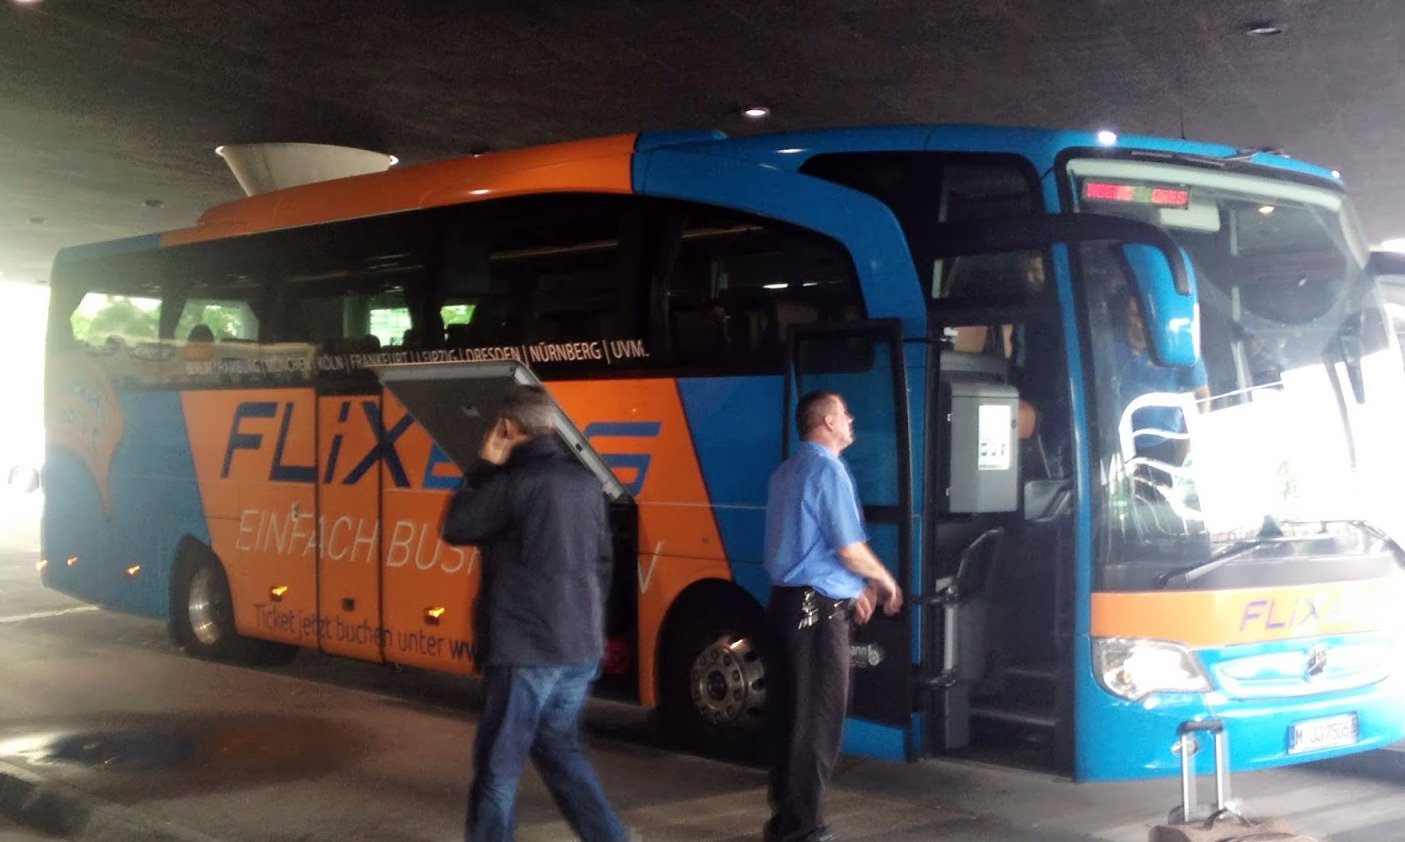 Der Flixbus am ZOB in München